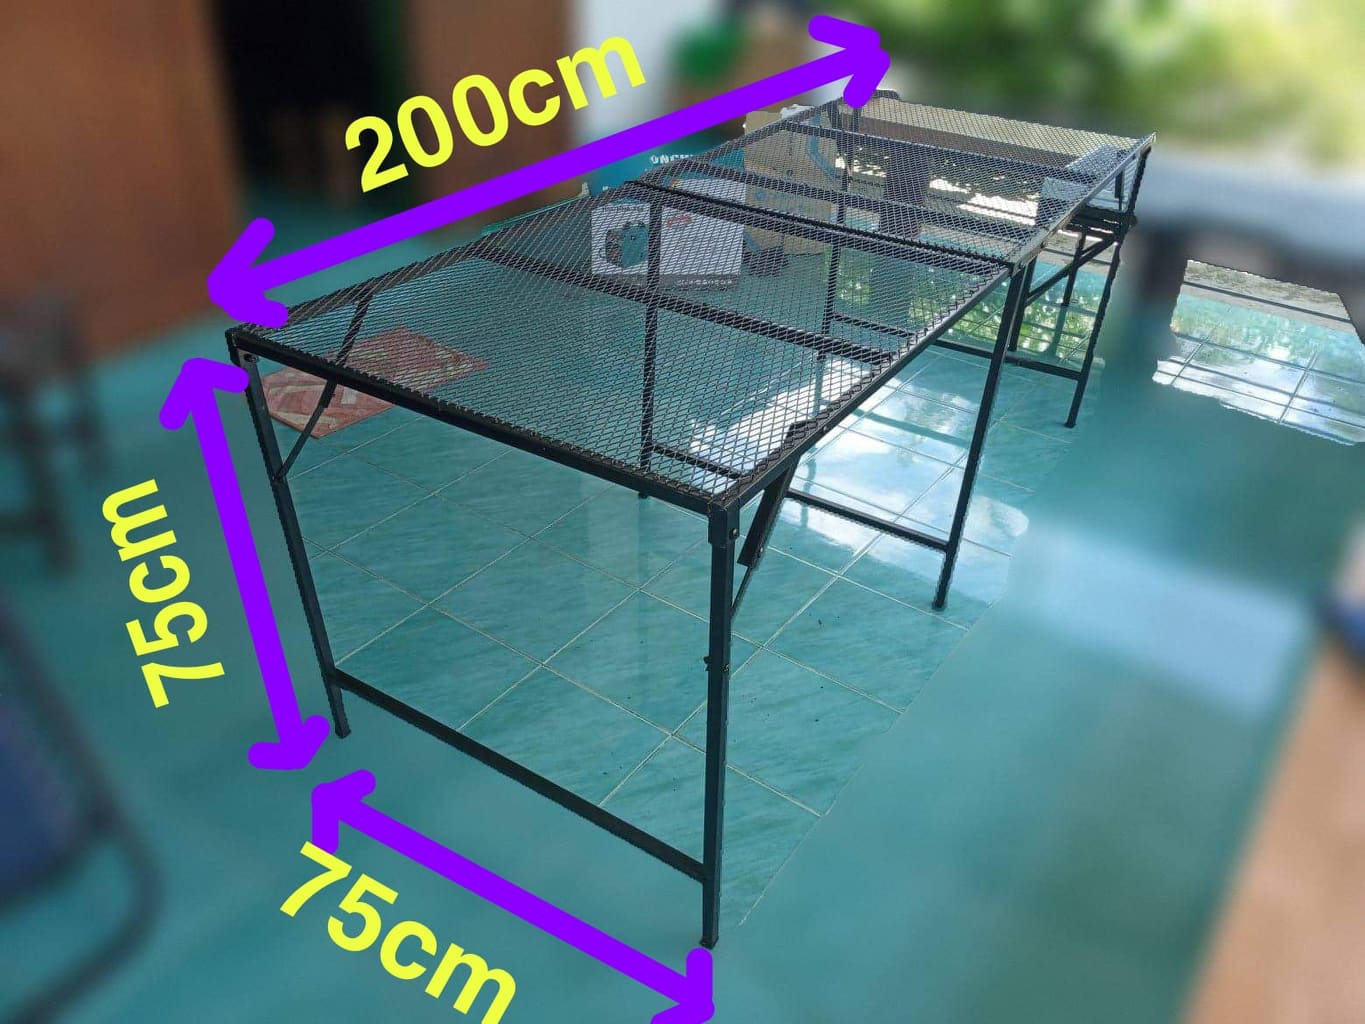 โต๊ะพับอเนกประสงค์ ขนาด ก.75Xย.200Xส.75 ซม. ตะแกรงเหล็ก พ่นสีป้องกันสนิม คงทนรับน้ำหนักได้ 200+Kg